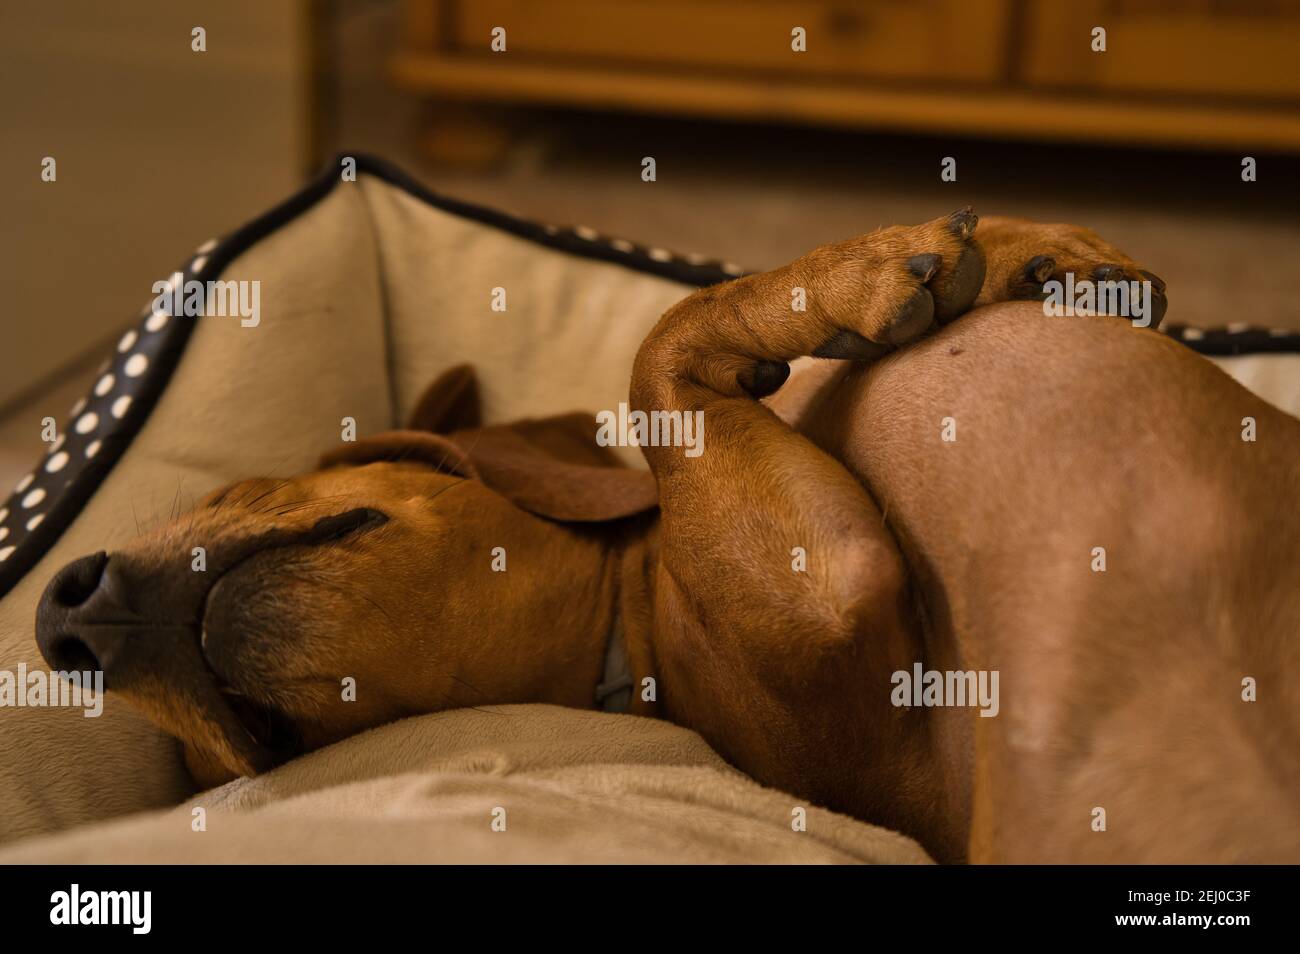 Bellissimo cane dachshund purebred, chiamato anche un teckel, cane viennese, o cane salsiccia, che pende su un letto di cane. Cane che dorme Foto Stock